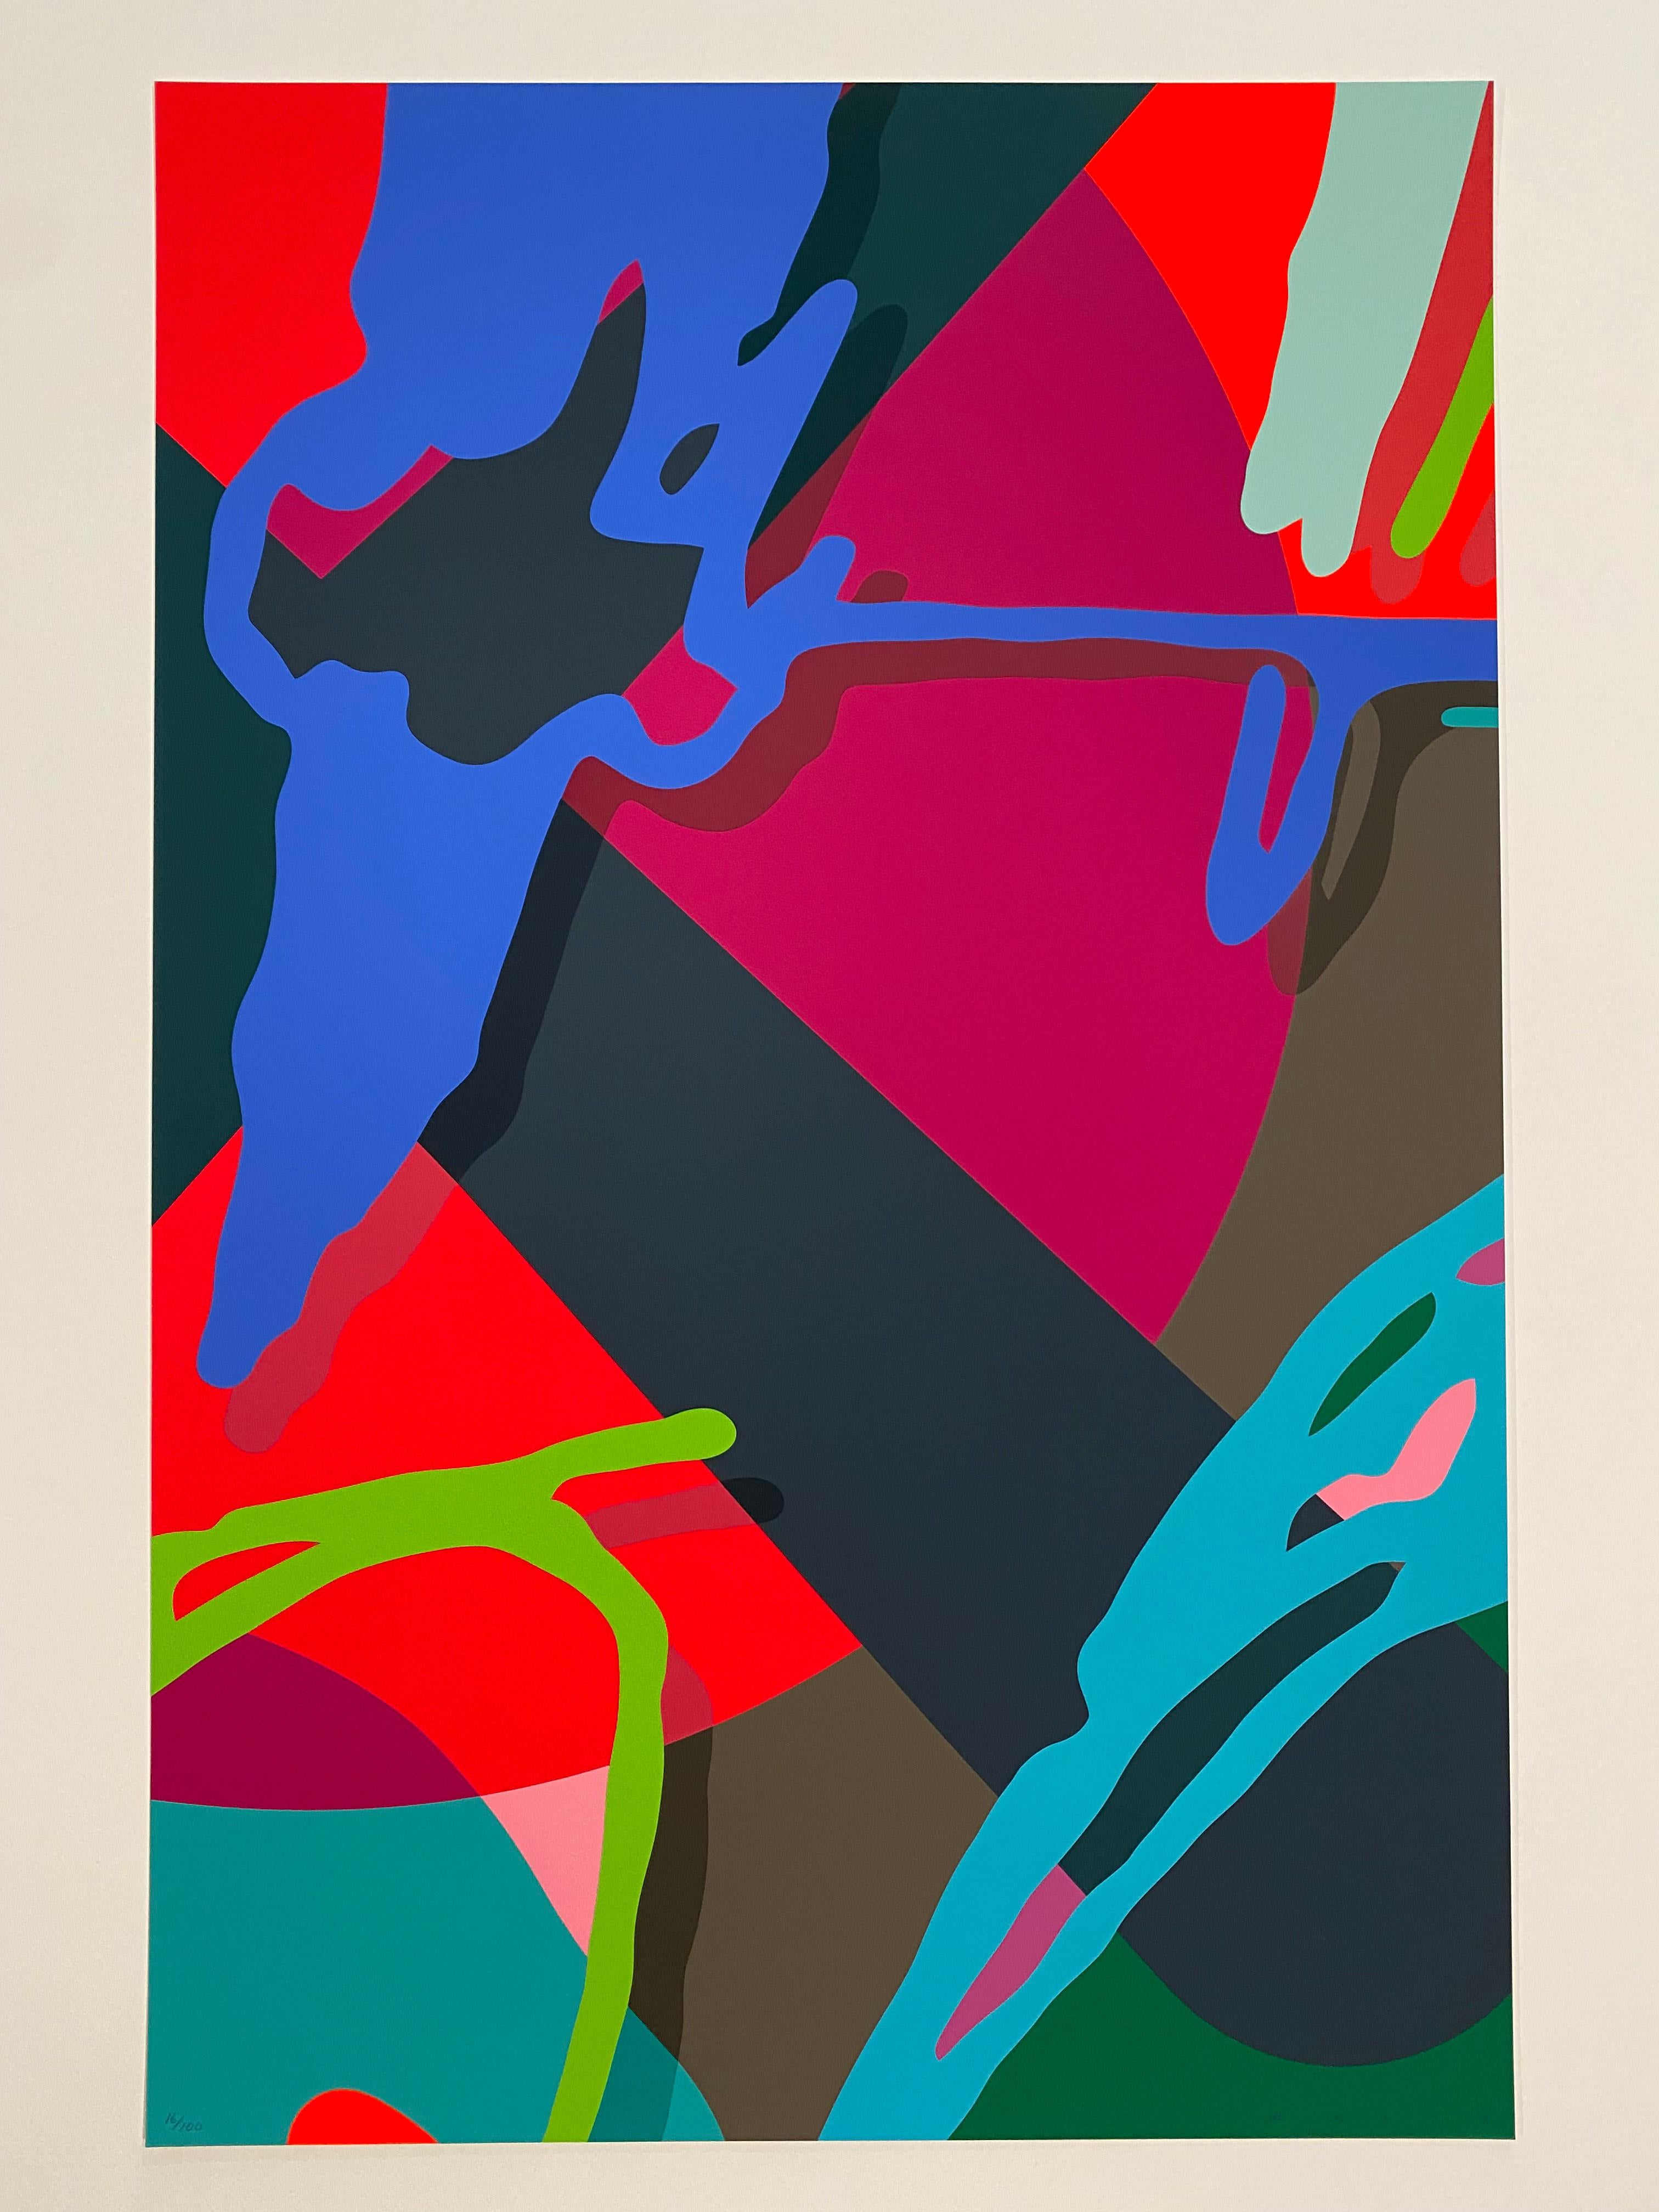 KAWS Abstract Print - Tension No. 9